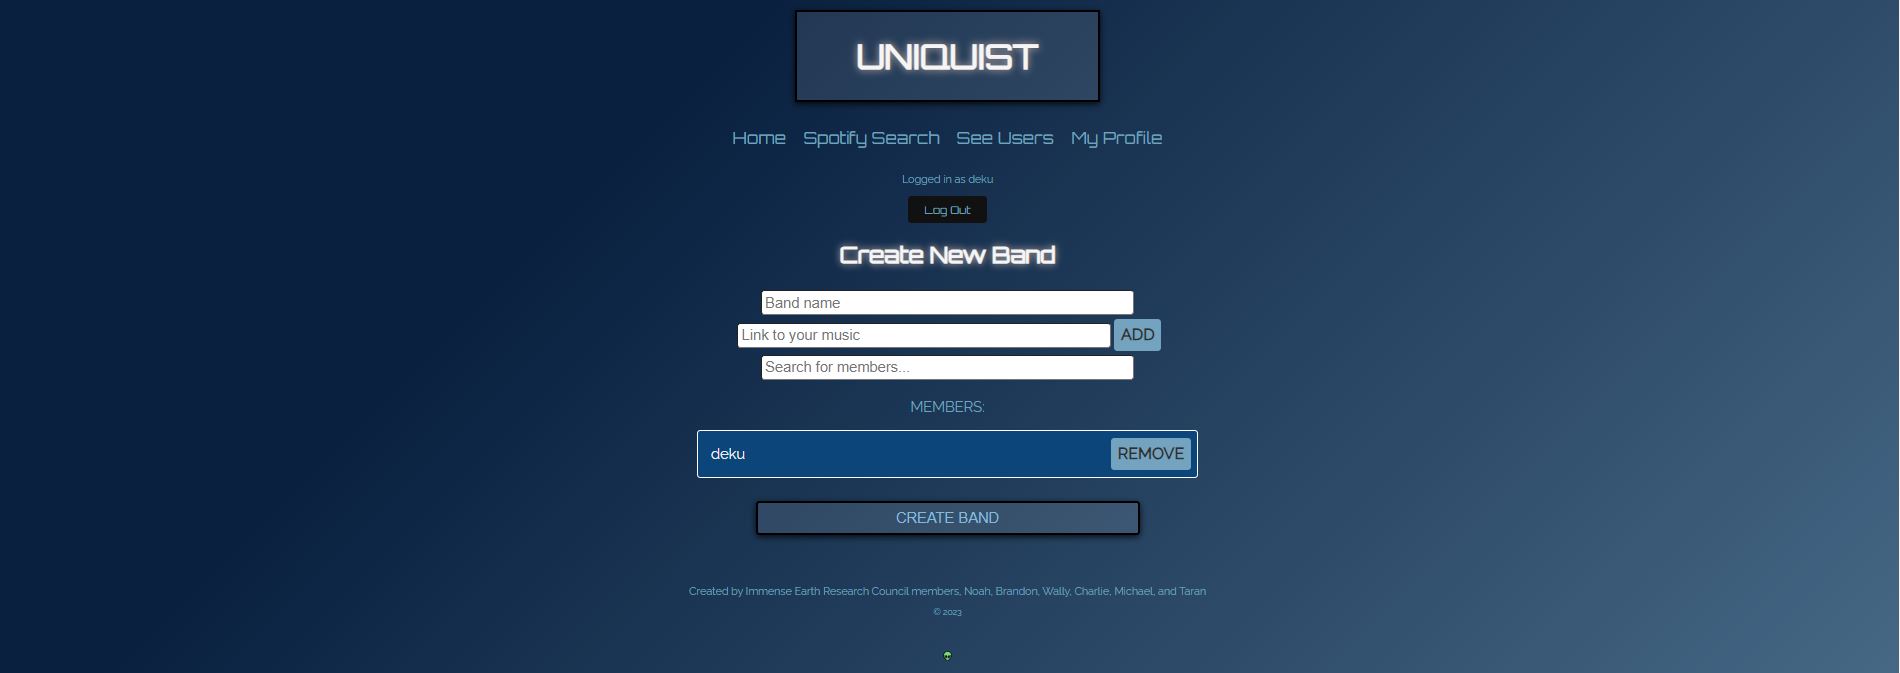 uniquist-create-band.JPG